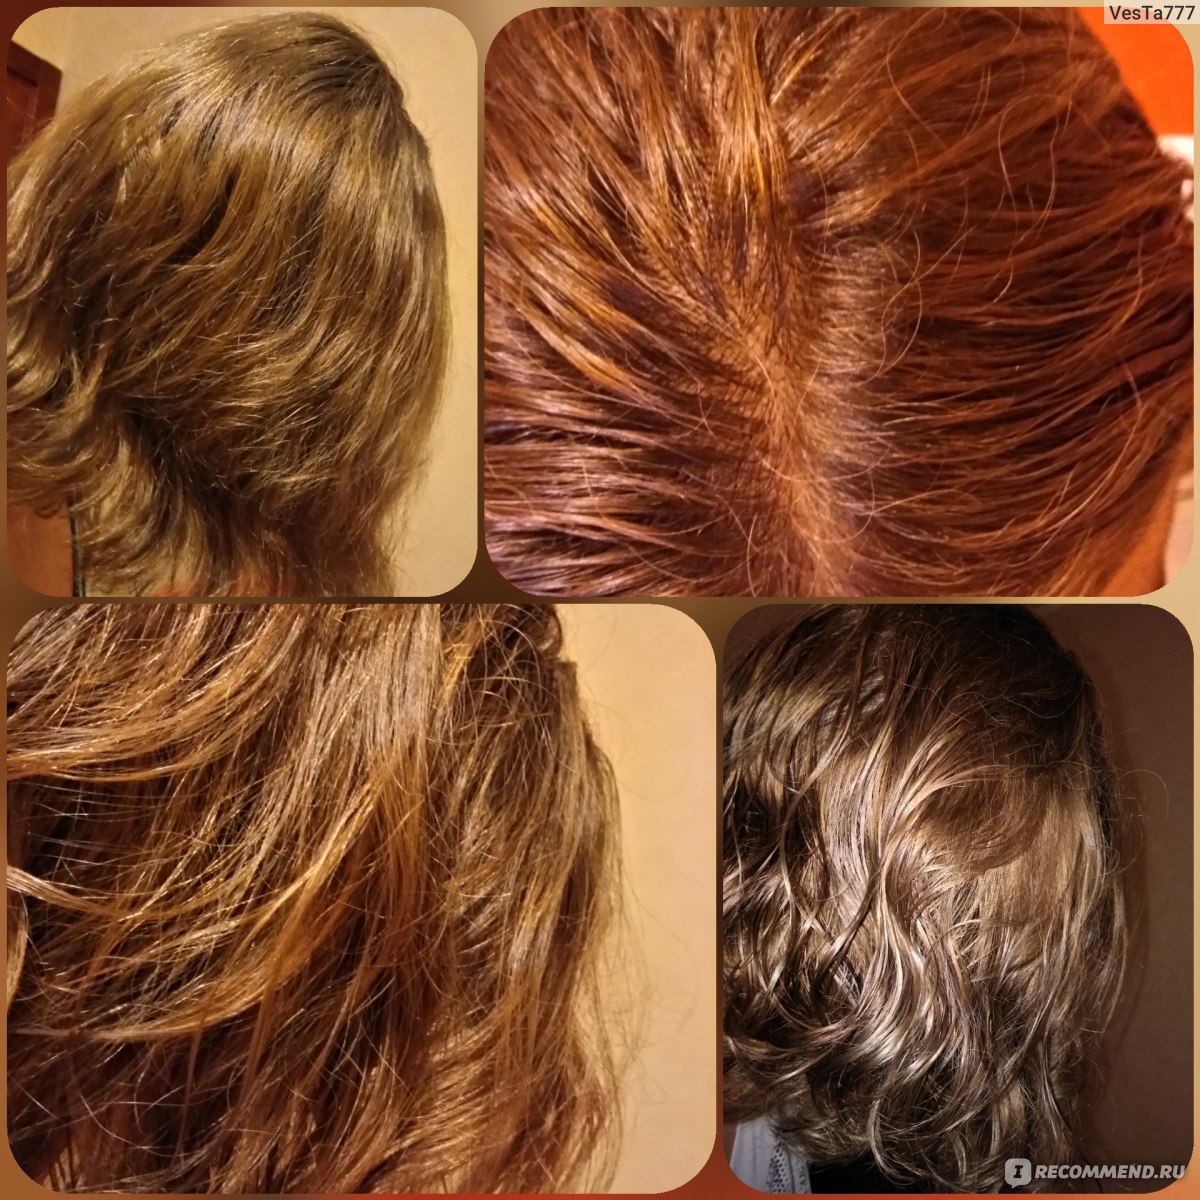 Хна и басма для волос фото до и после